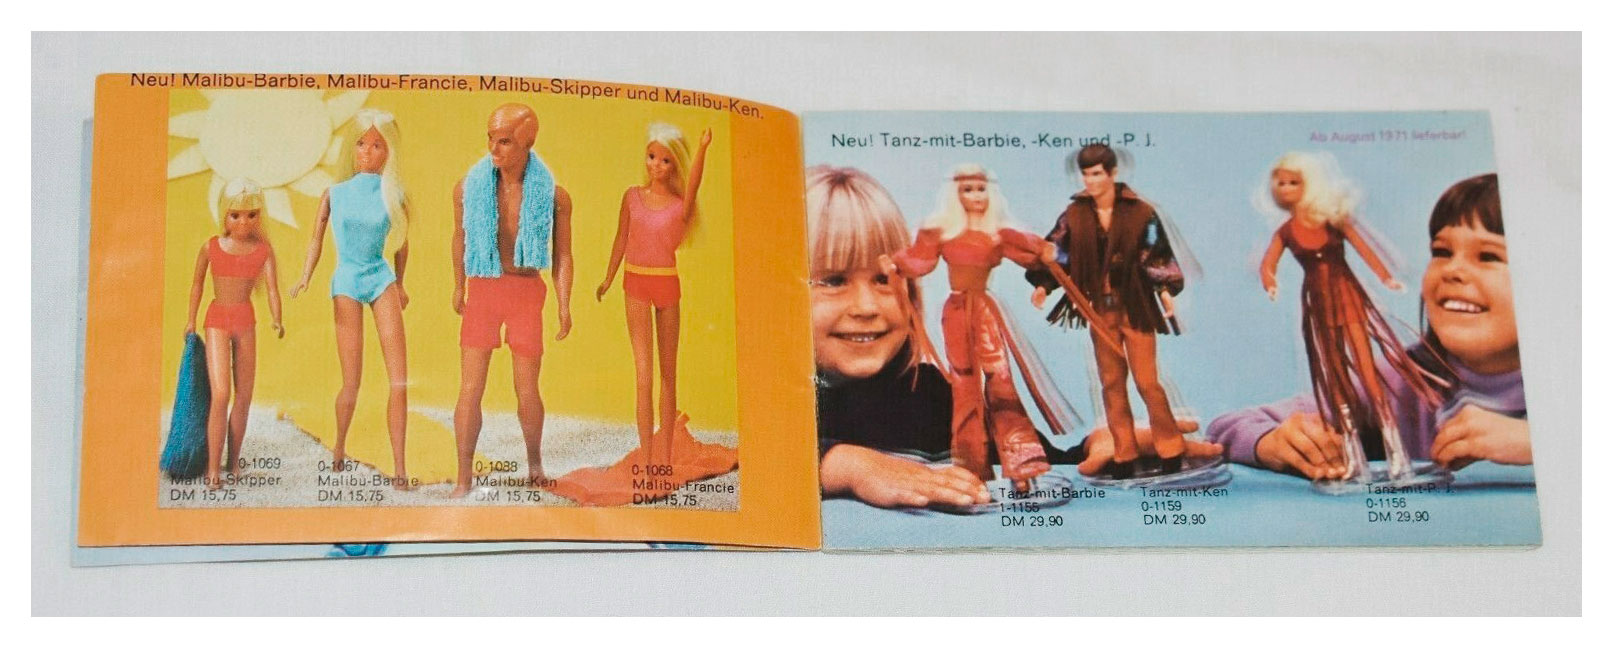 From 1971 German Barbie booklet